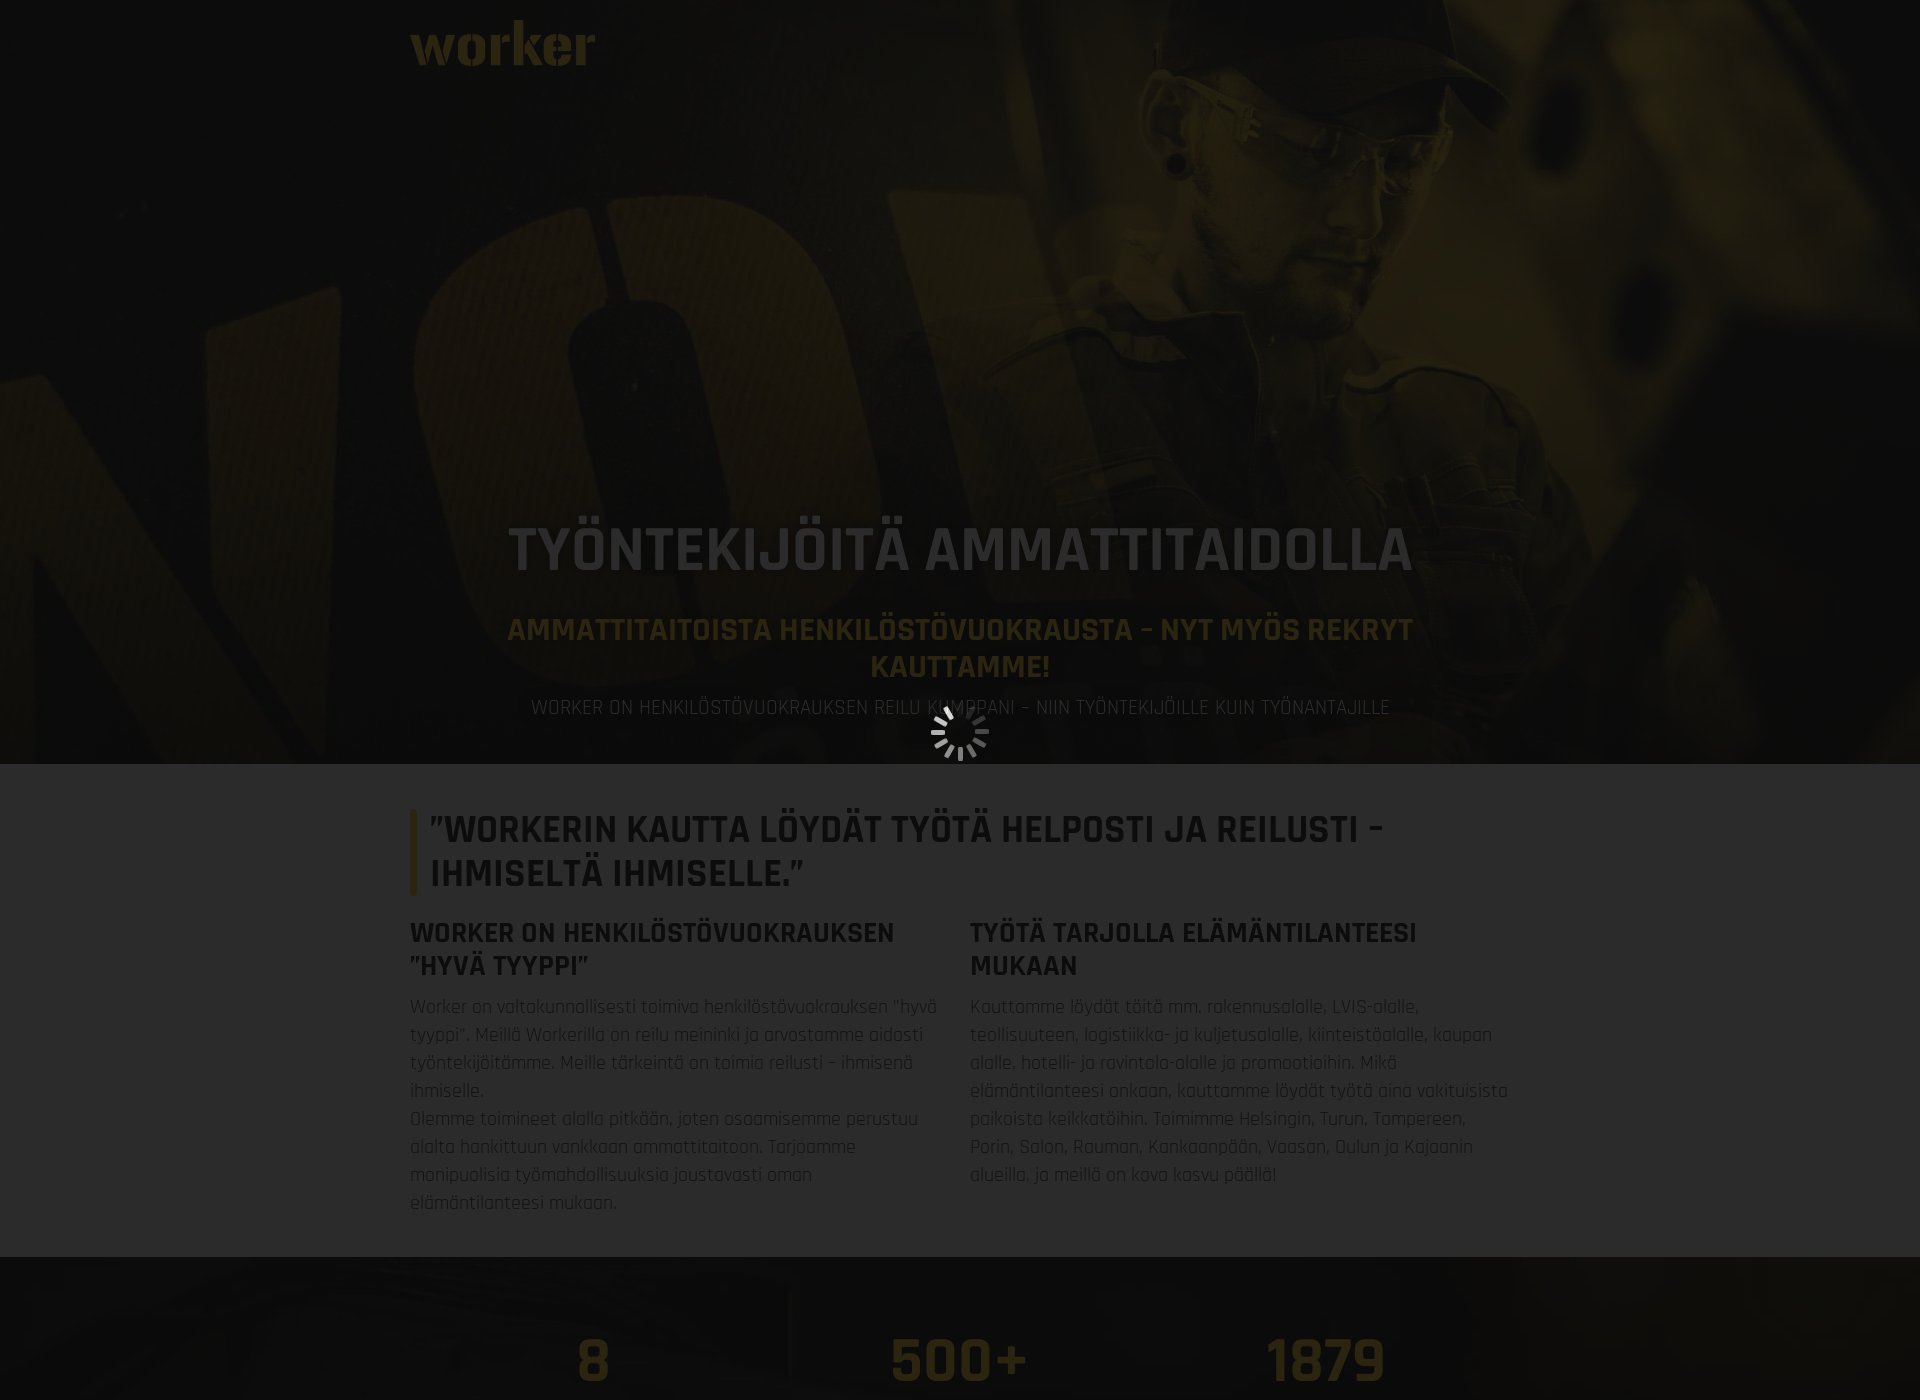 Skärmdump för worker-rekry.fi